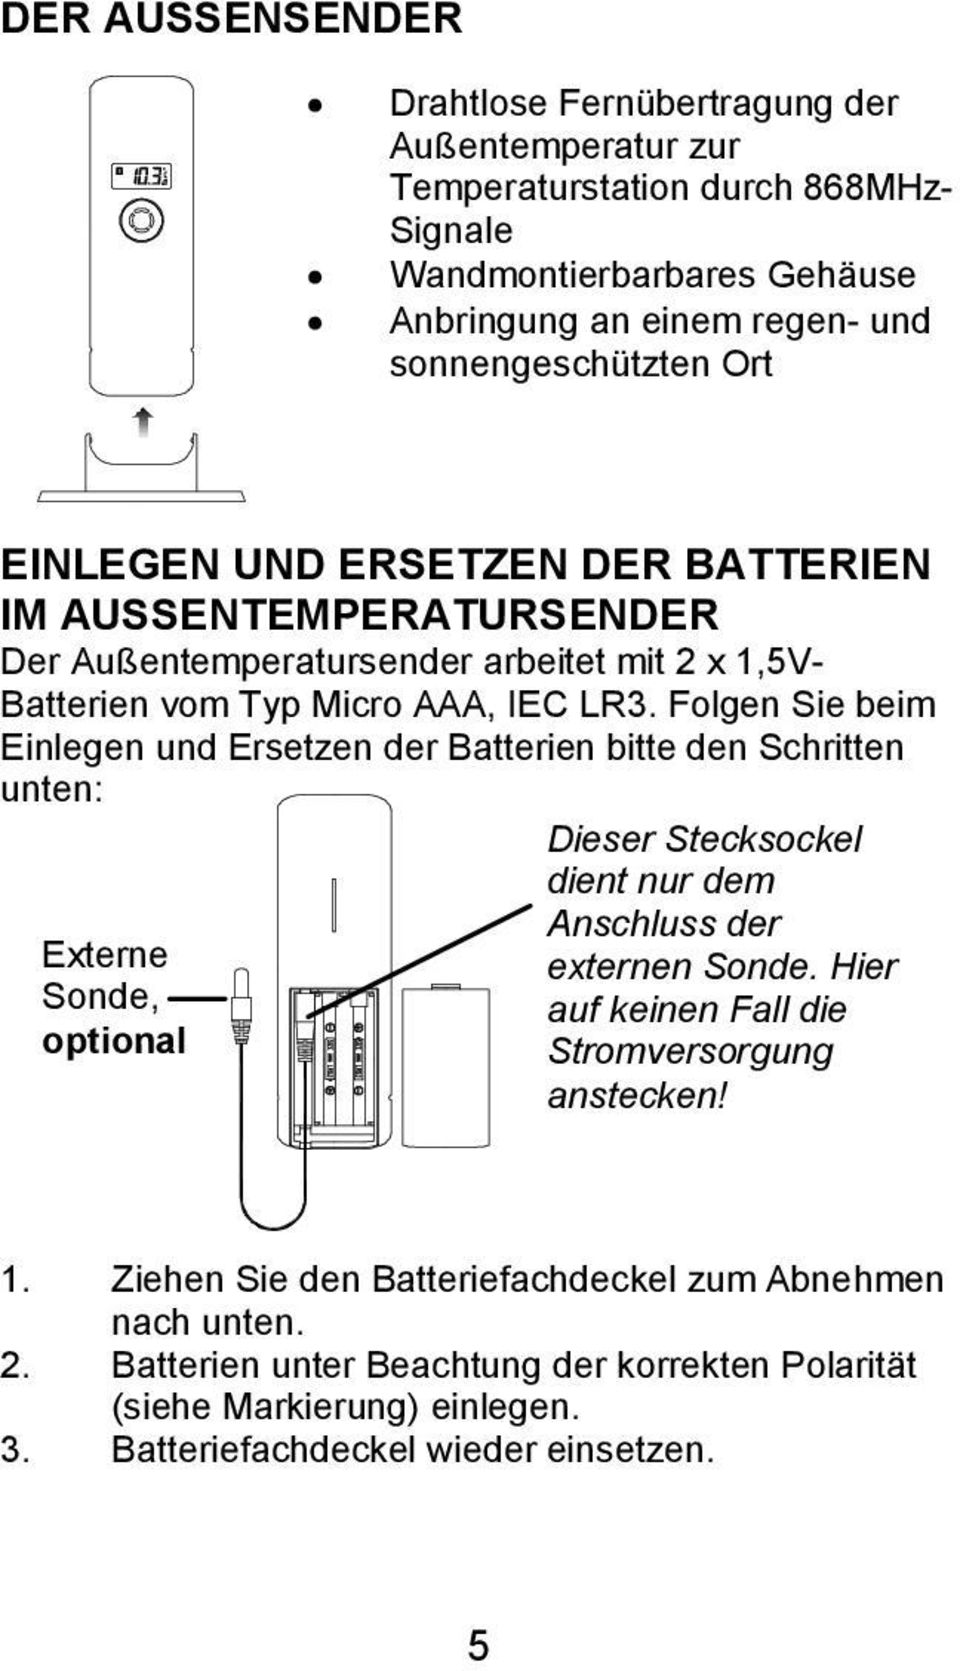 Folgen Sie beim Einlegen und Ersetzen der Batterien bitte den Schritten unten: Externe Sonde, optional Dieser Stecksockel dient nur dem Anschluss der externen Sonde.